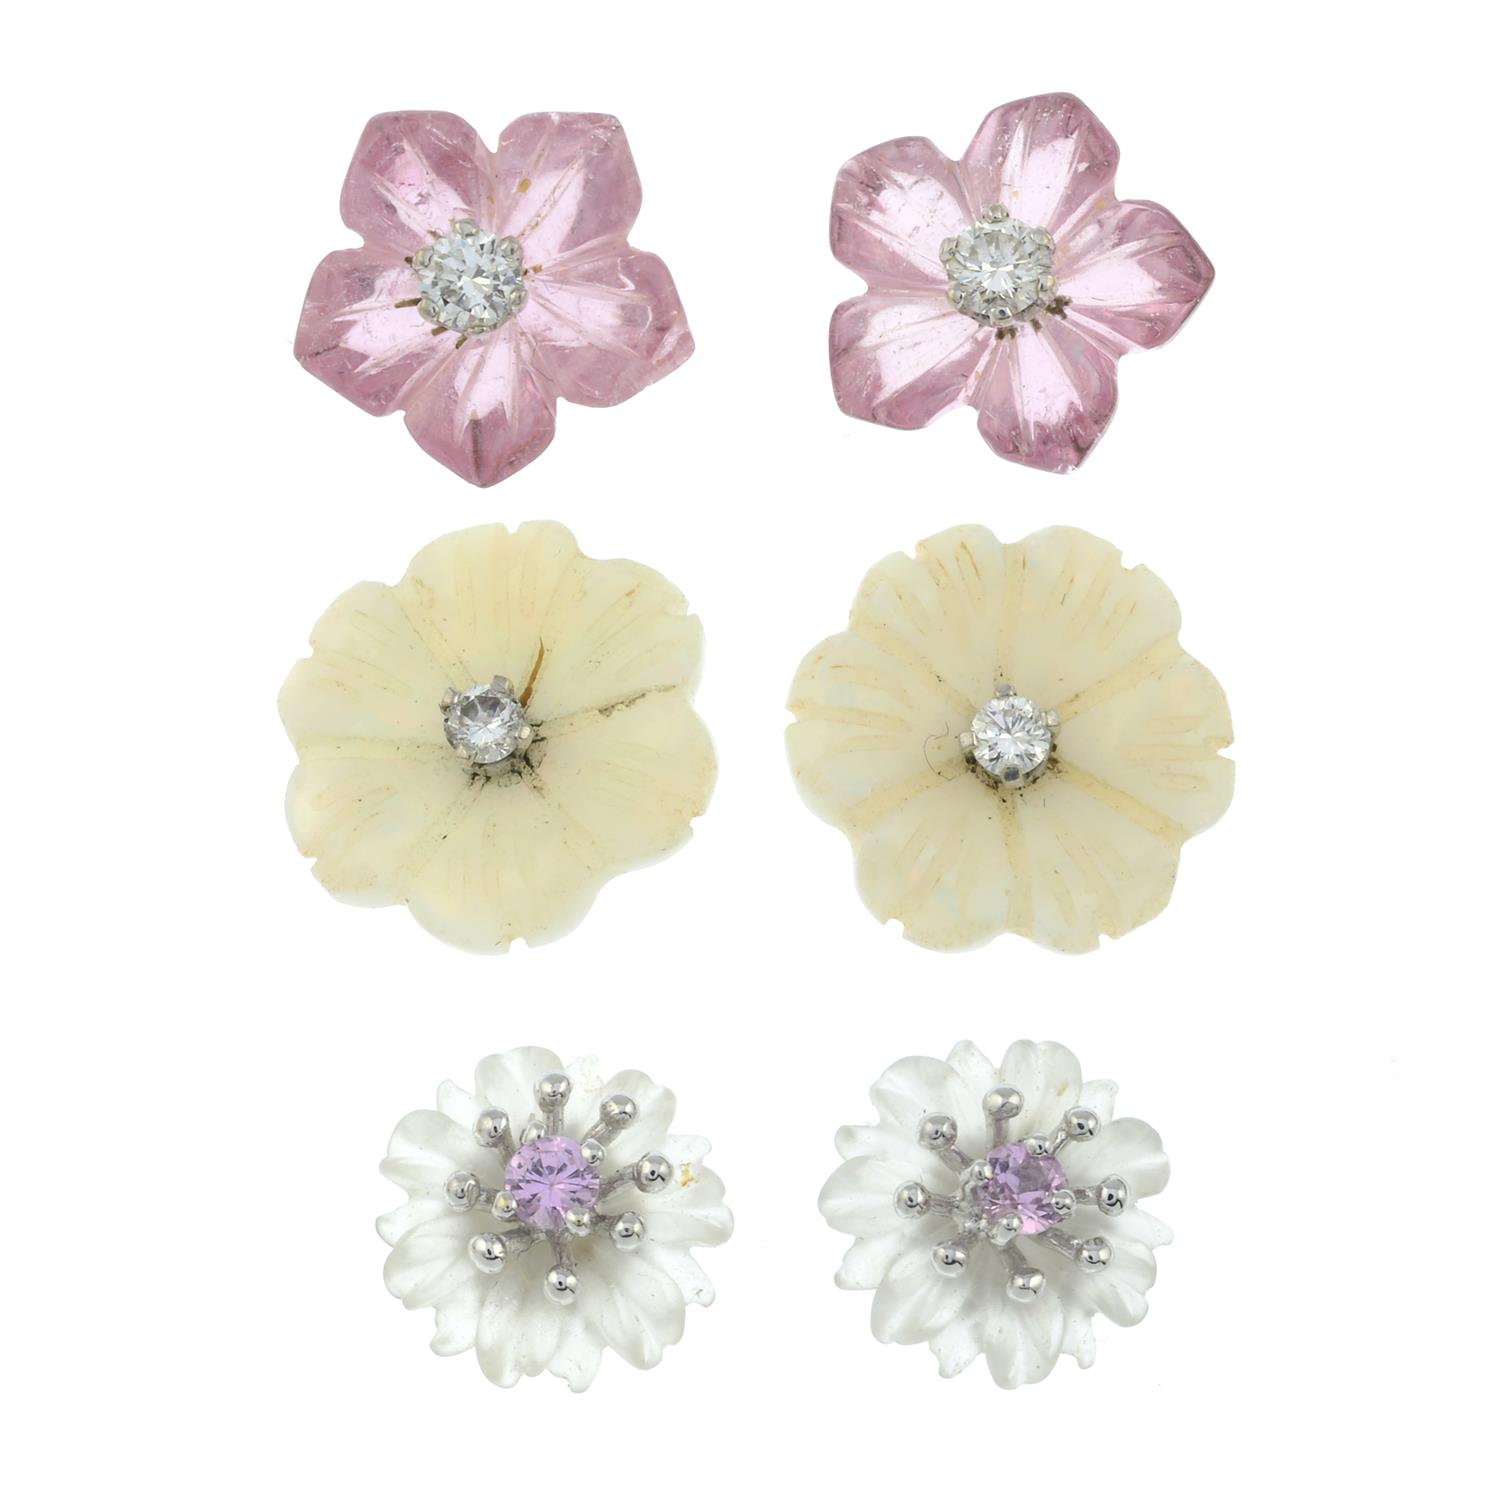 Three pairs of carved gem stud earrings.